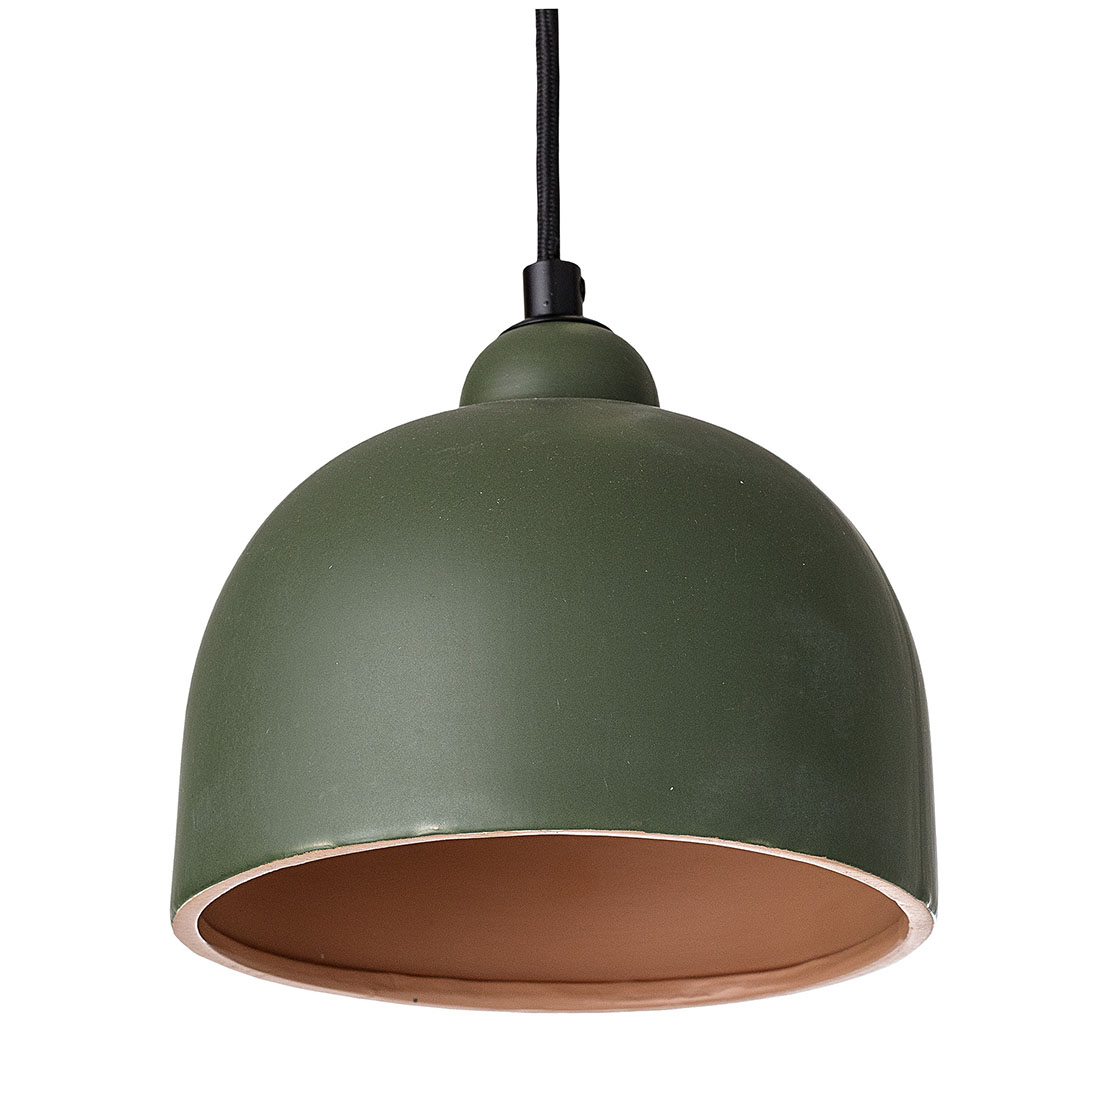 bloomingville-green-ceramic-pendant-lamp